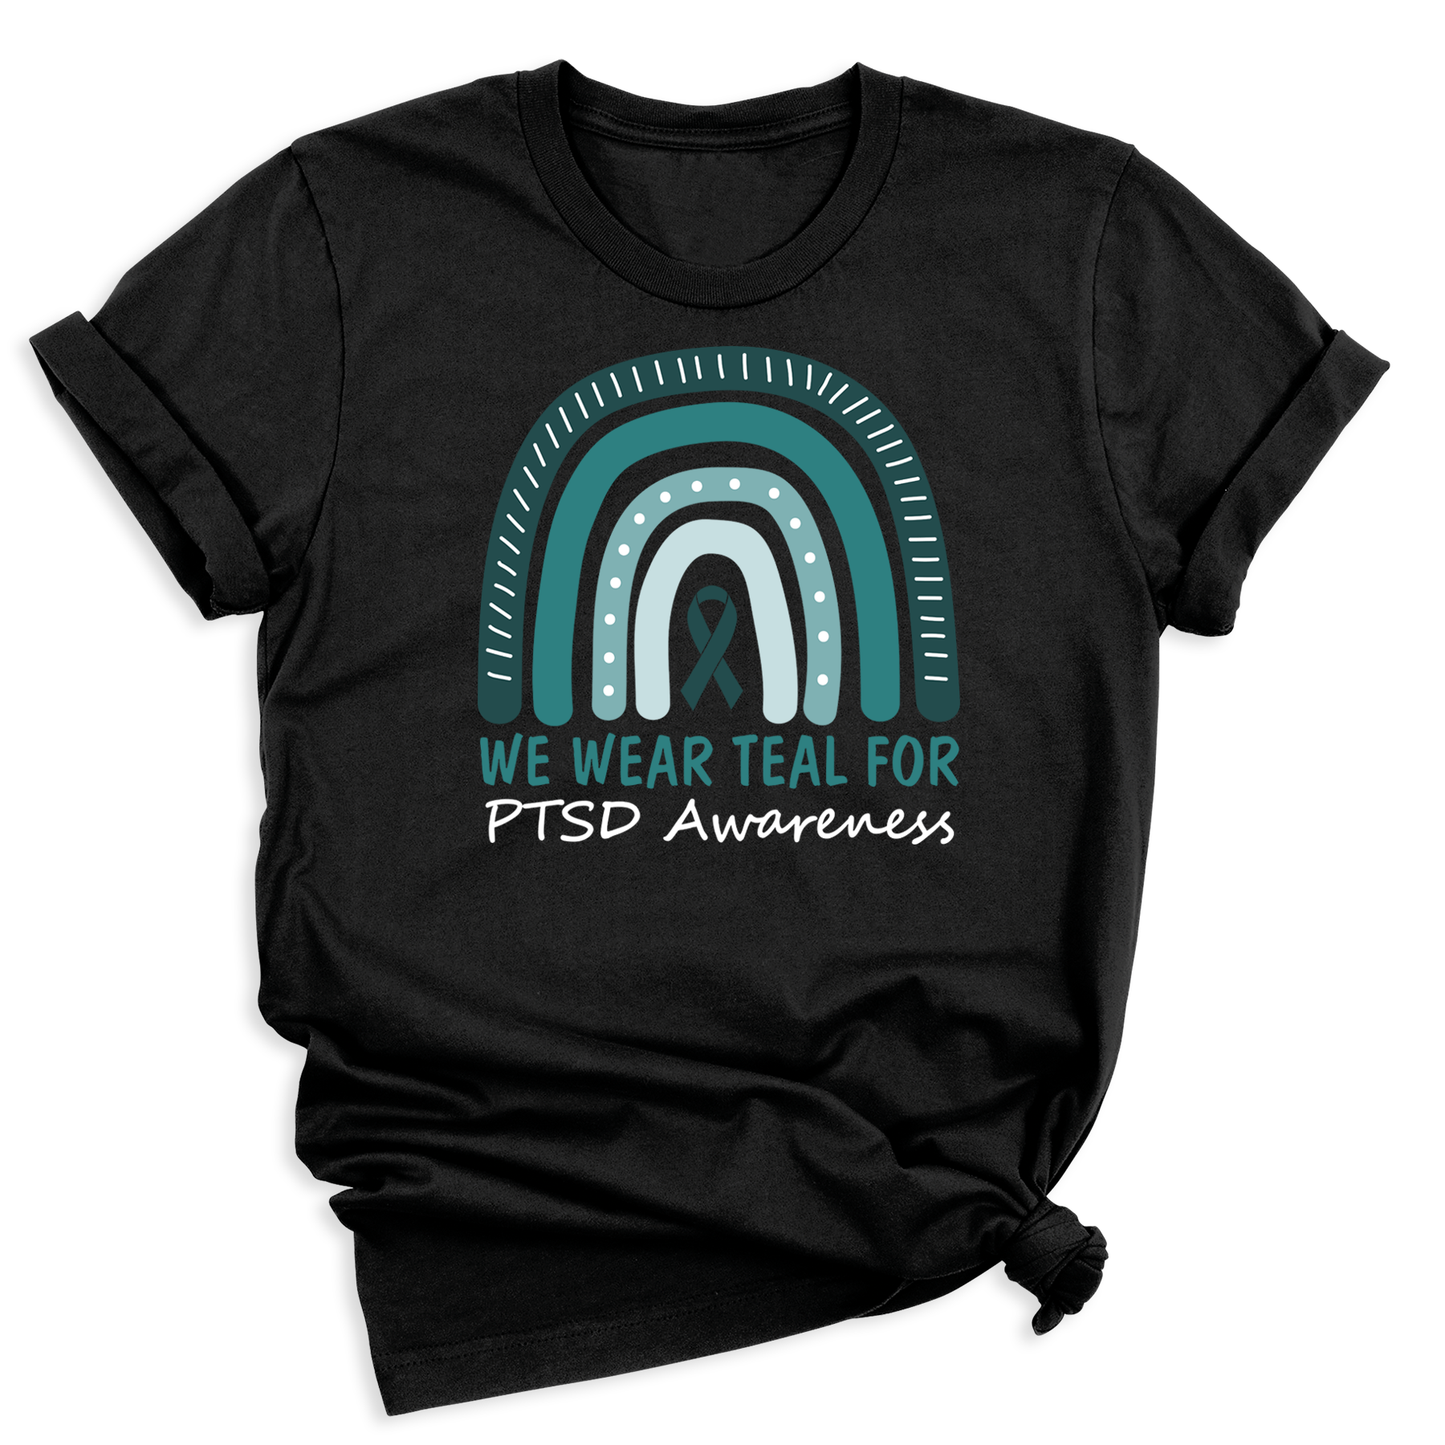 We Wear Teal for PTSD Awareness Shirt